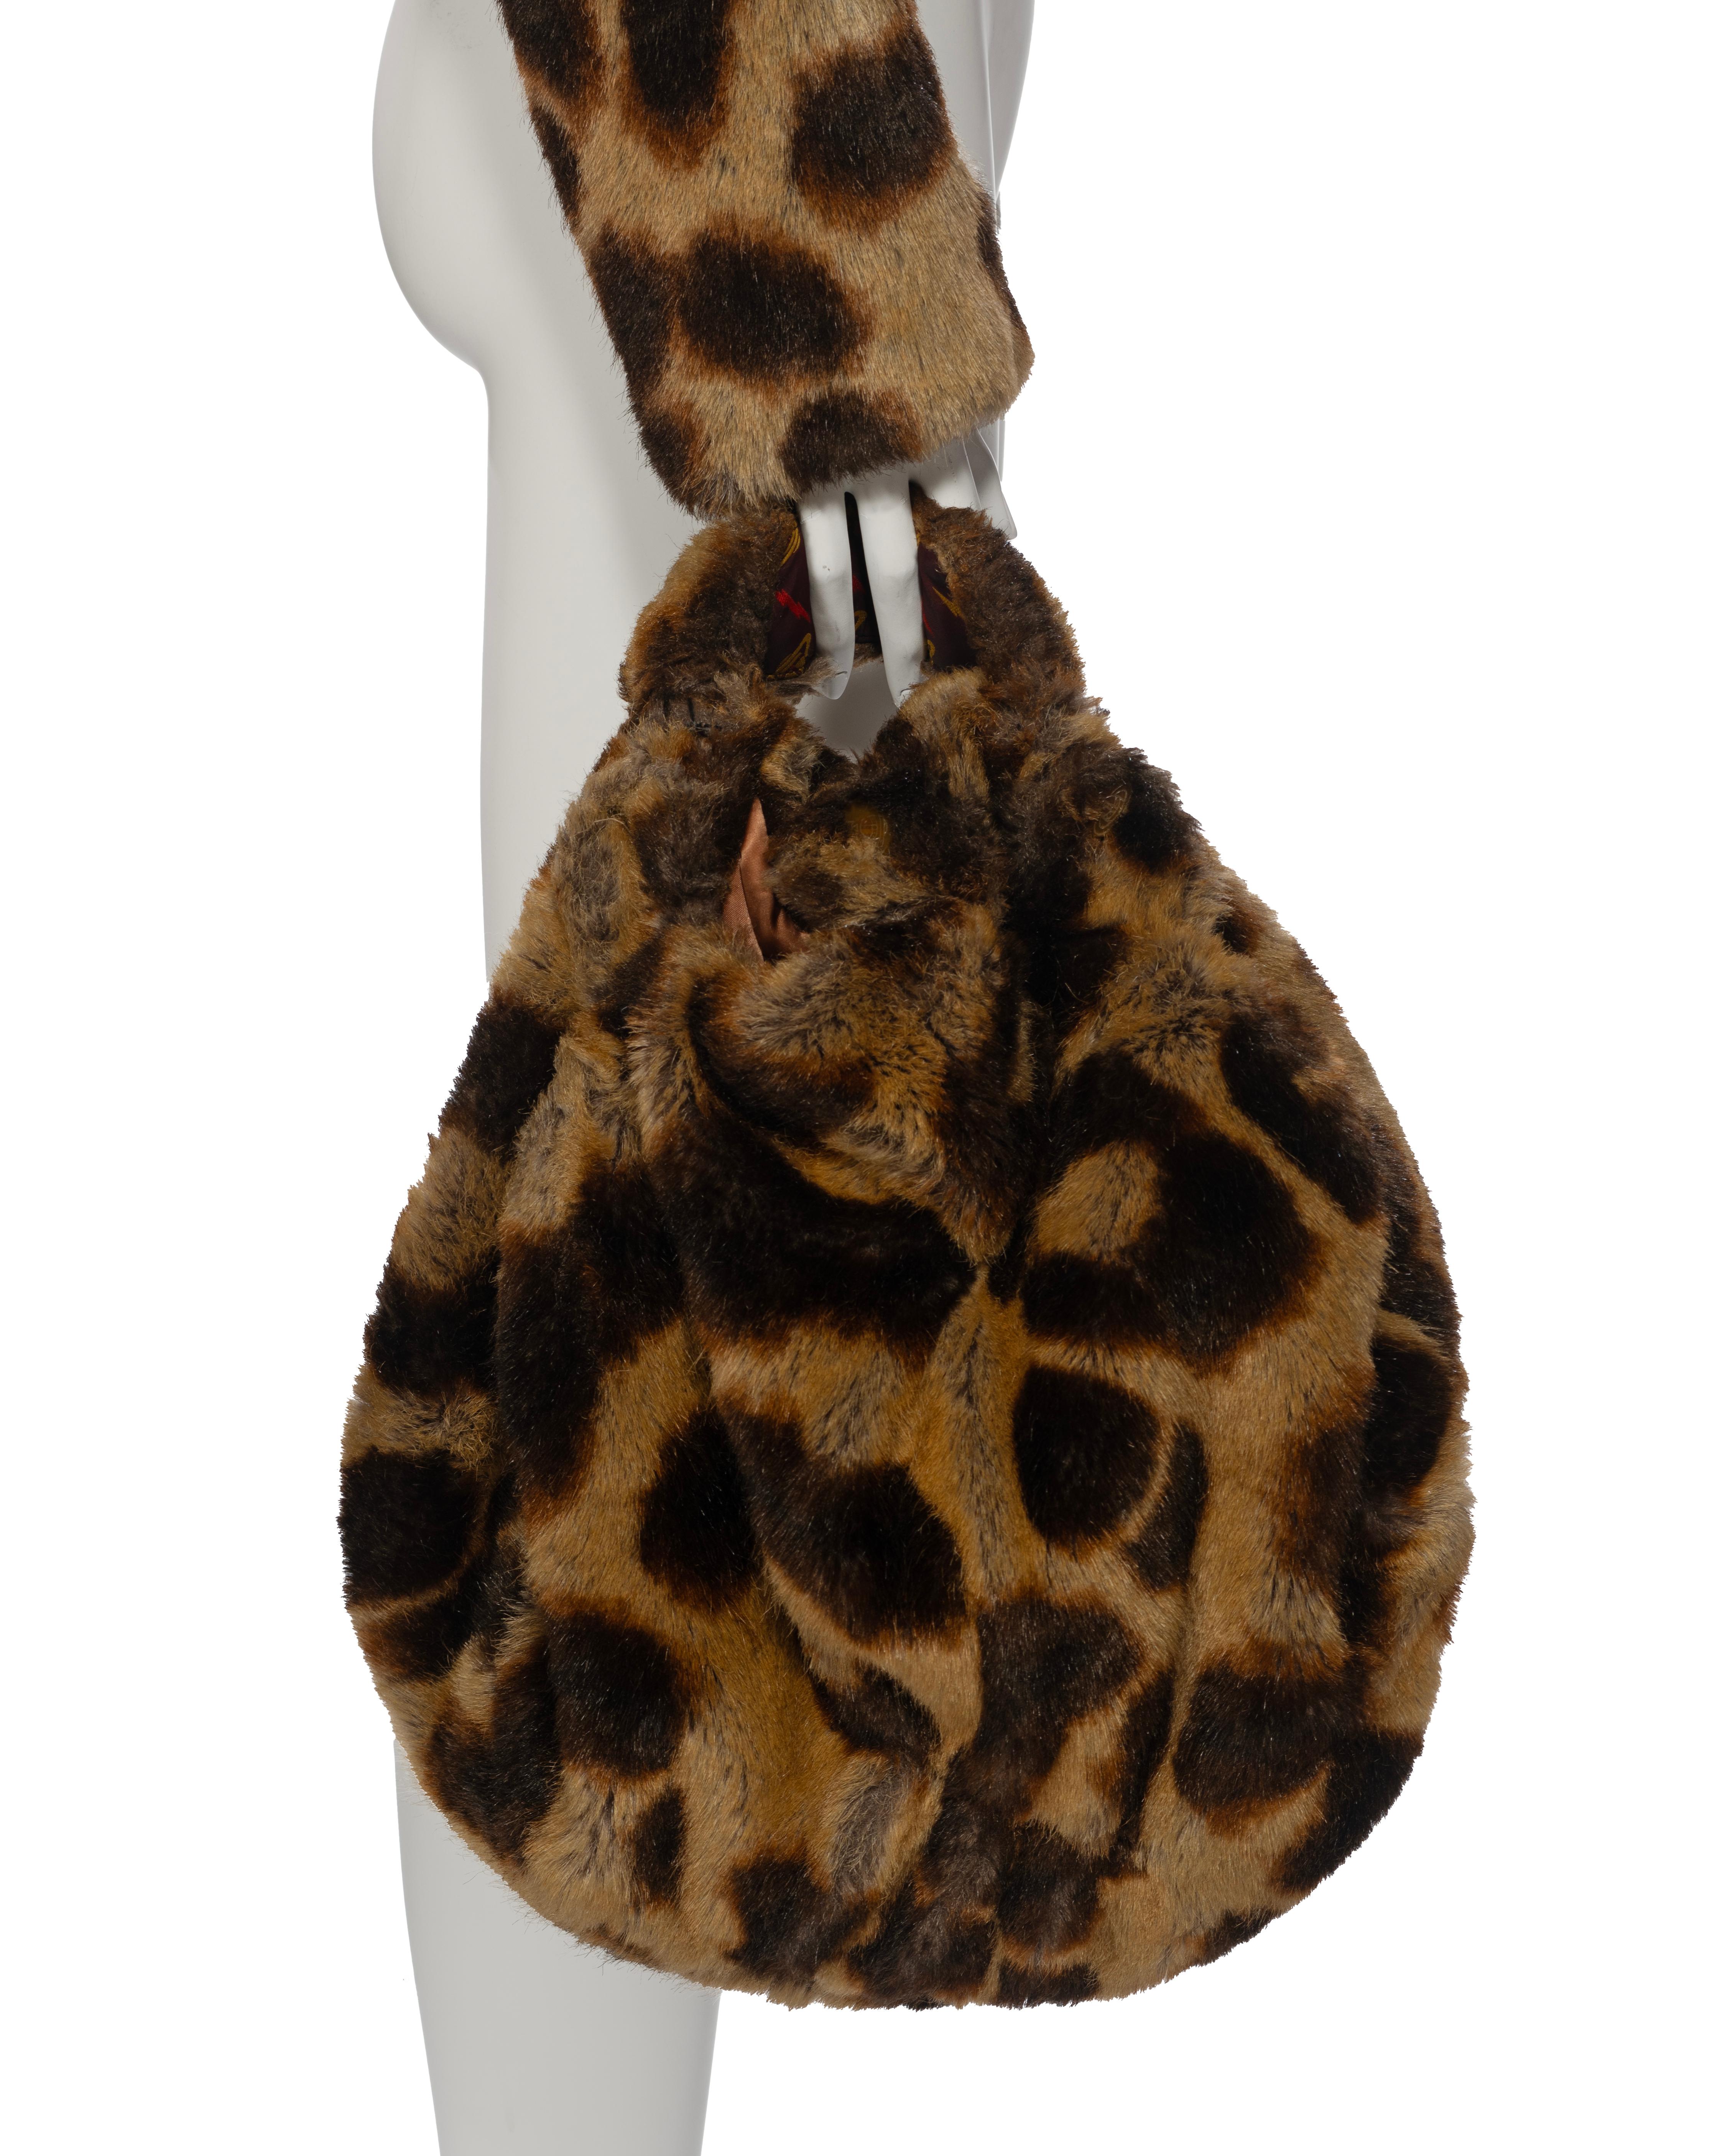 Vivienne Westwood Leopard Print Faux Fur Jacket and Bag Set, fw 1992 2